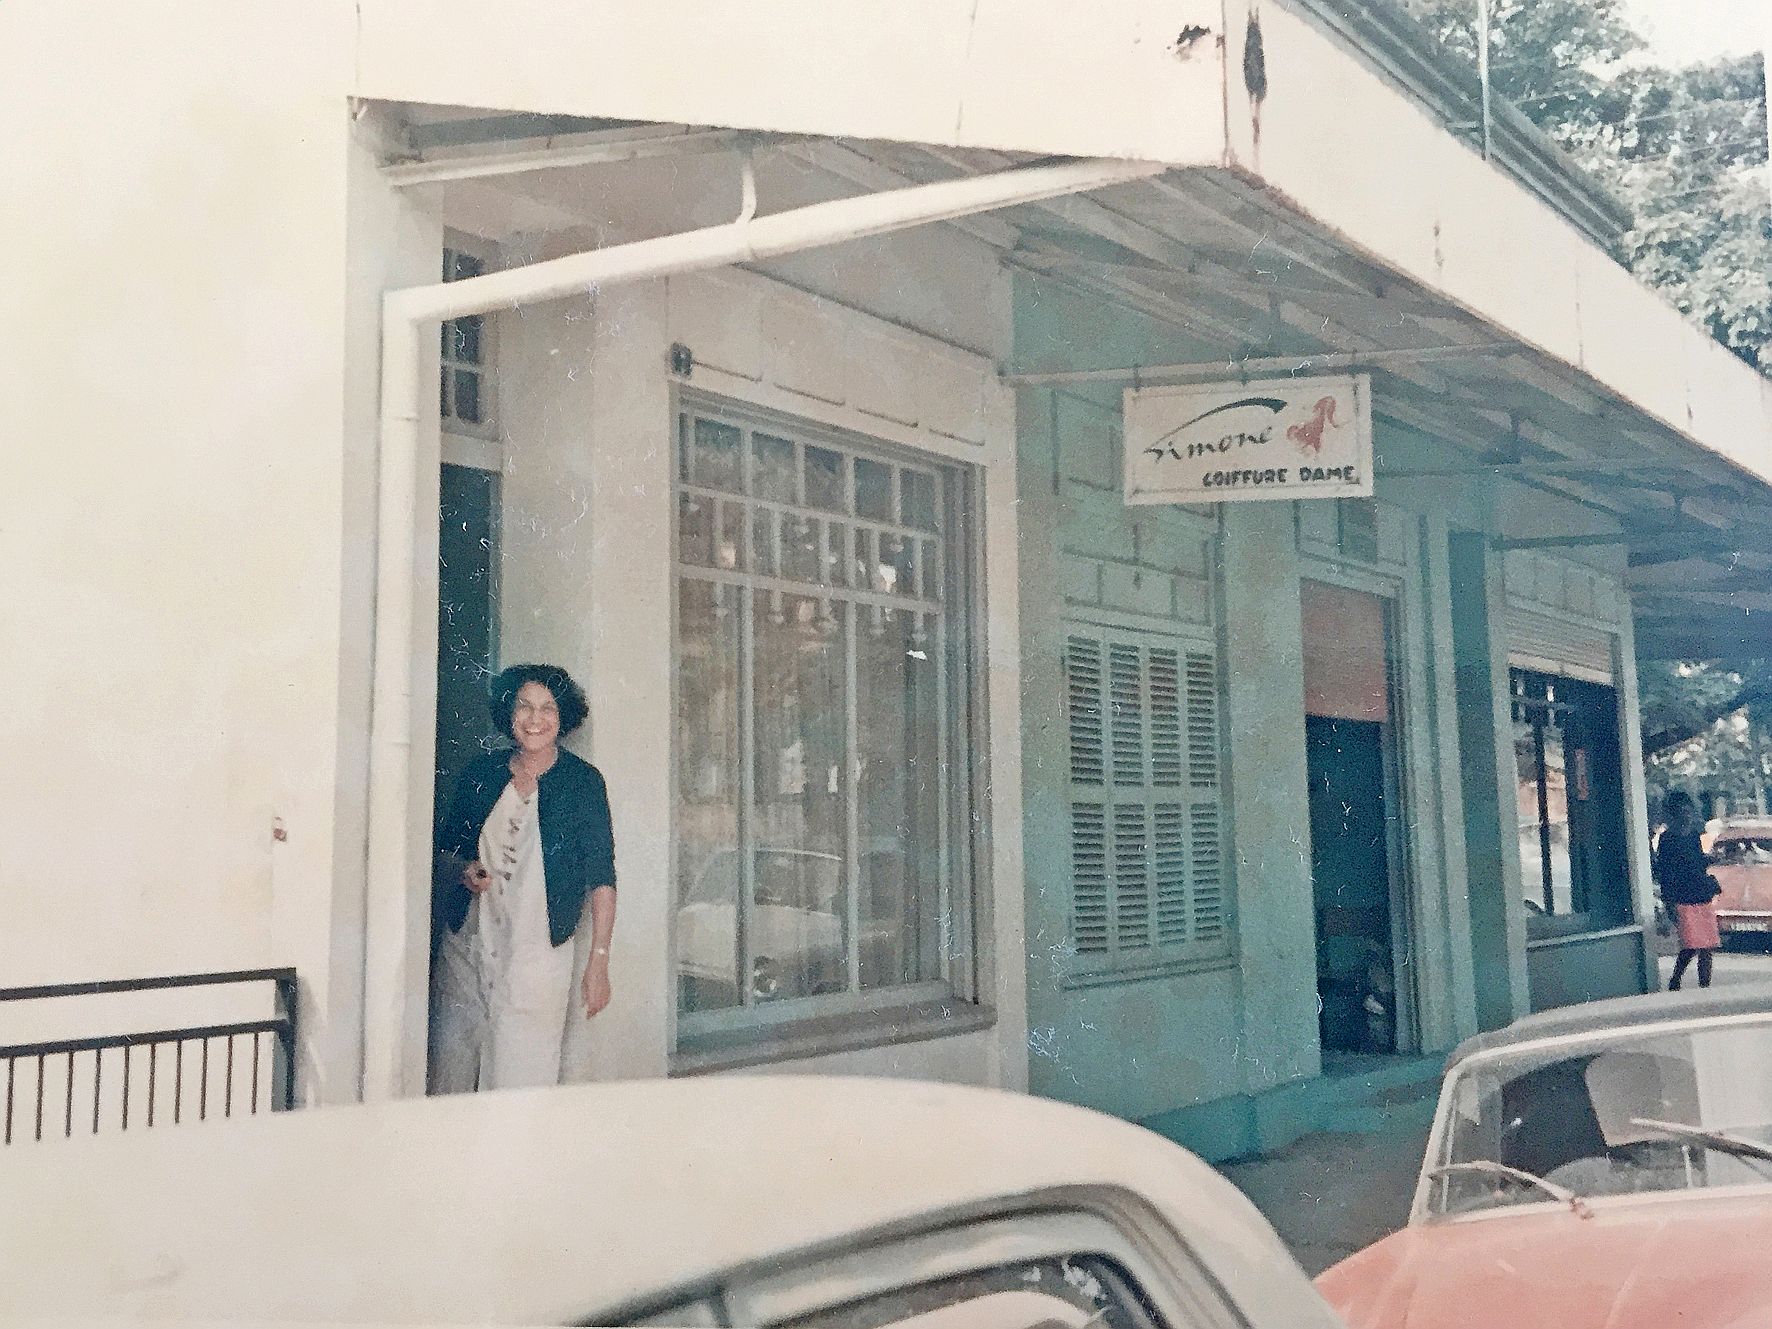 Raymonde devant le salon de coiffure « Simone coiffure dame », à la fin des années 60.